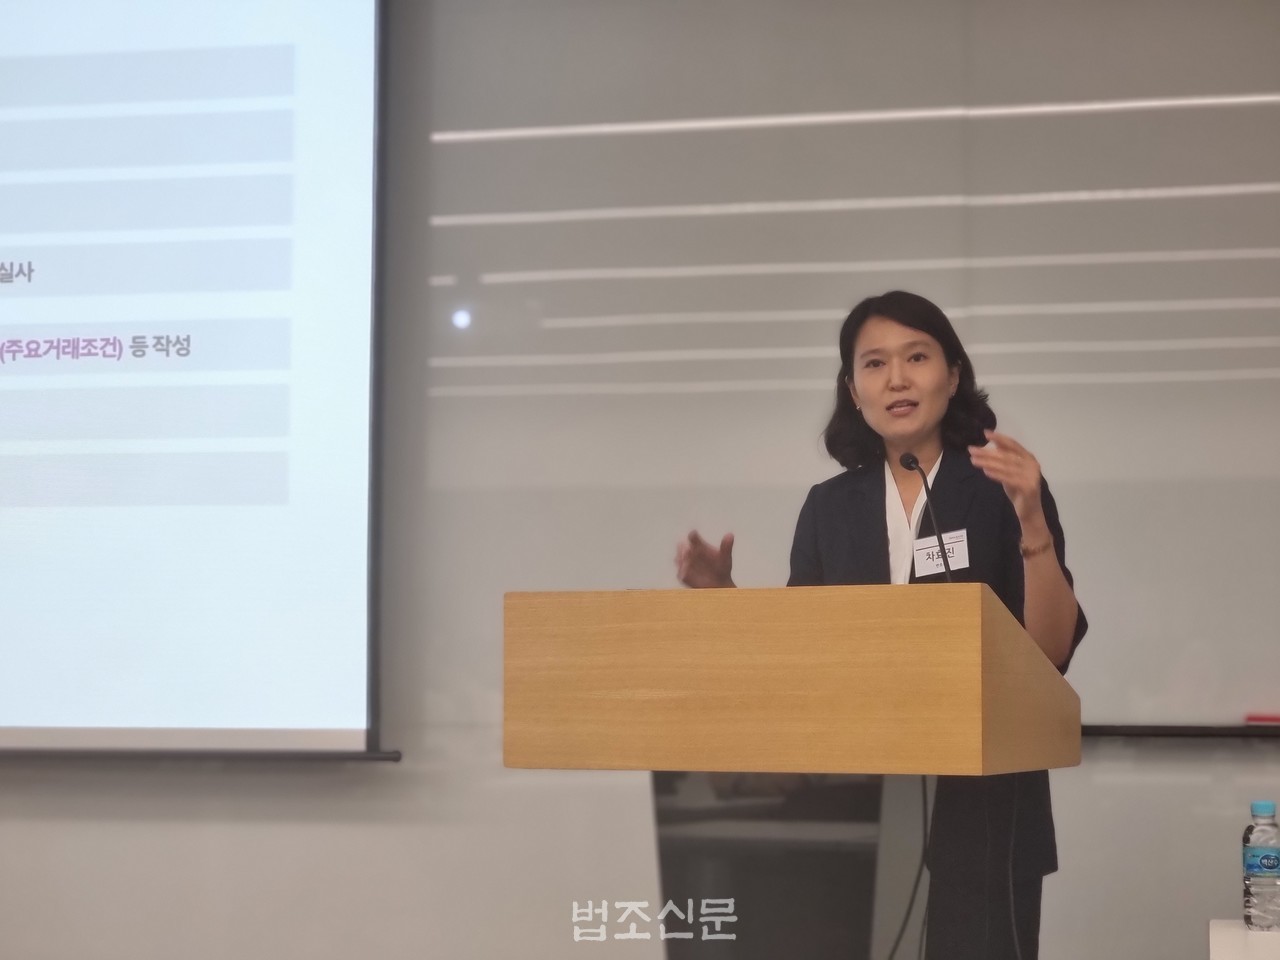 차효진 변호사가 15일 서울 종로구 디타워 23층 세미나실에서 열린 '의약발명 특허의 최근 동향 및 기업의 대응전략' 세미나에서 발표를 하고 있다